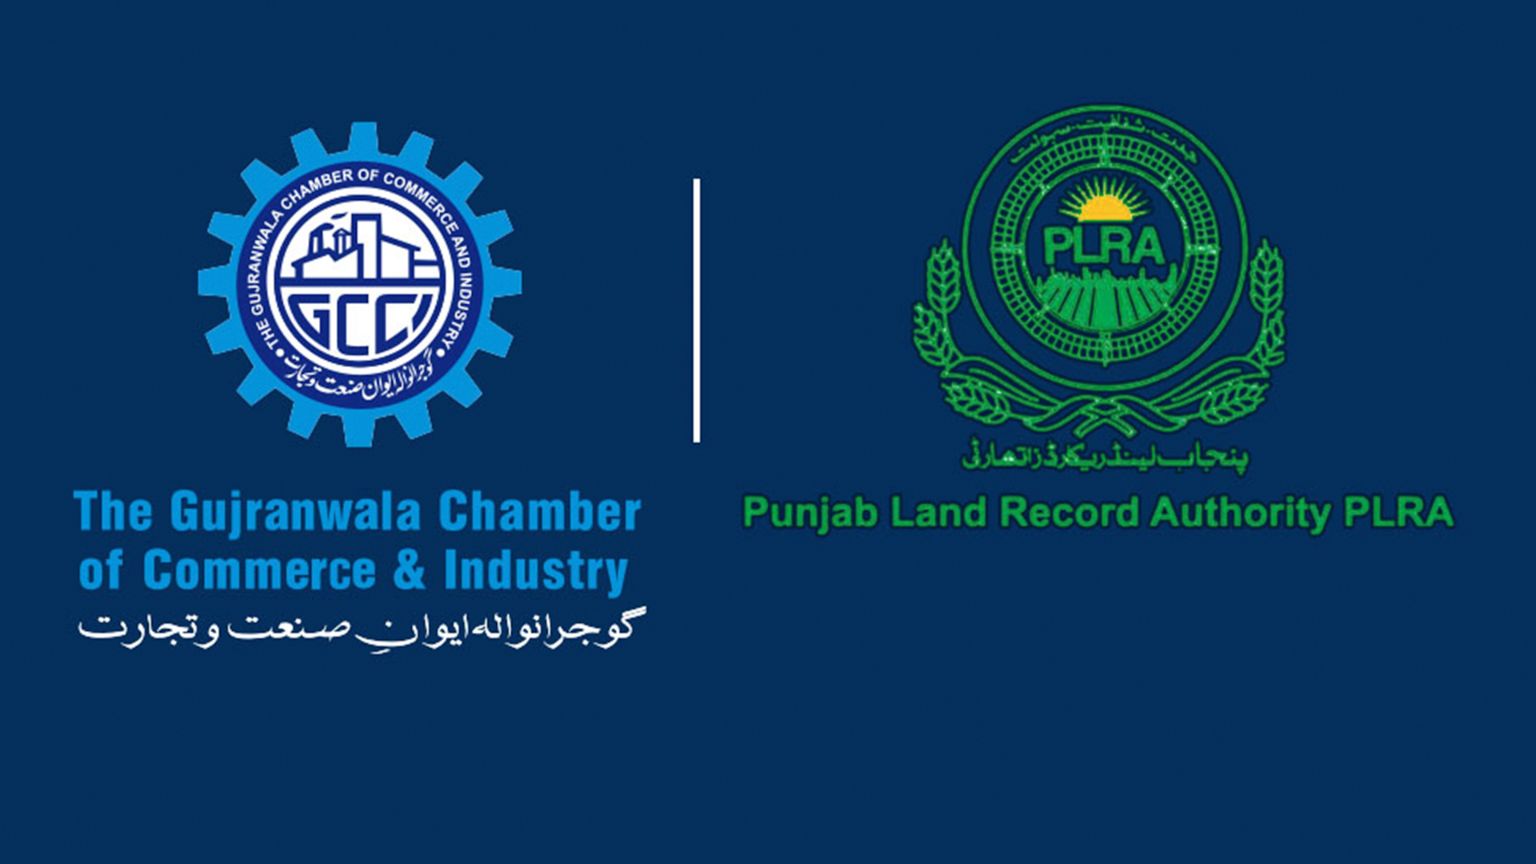 Punjab Land Records Authority